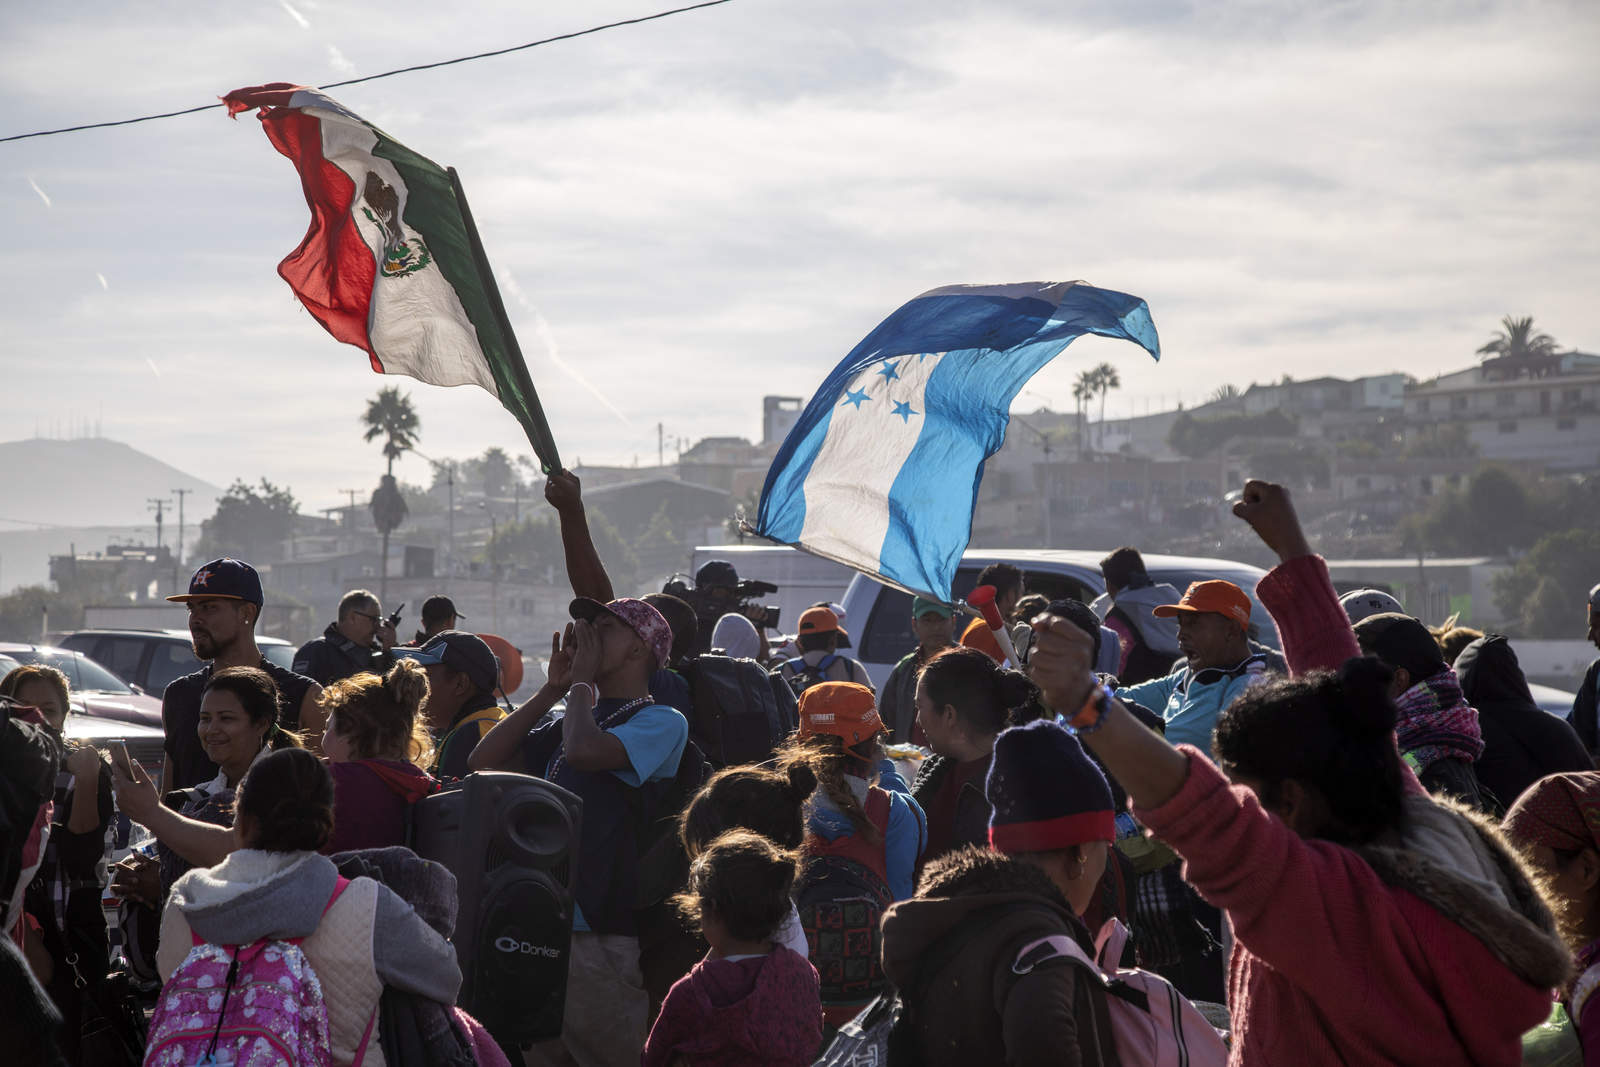 - El tercer contingente de la Caravana Migrante llegó a Tijuana procedente de Centroamérica, con la intención de cruzar a Estados Unidos de manera ilegal o solicitar visa humanitaria. (NOTIMEX)